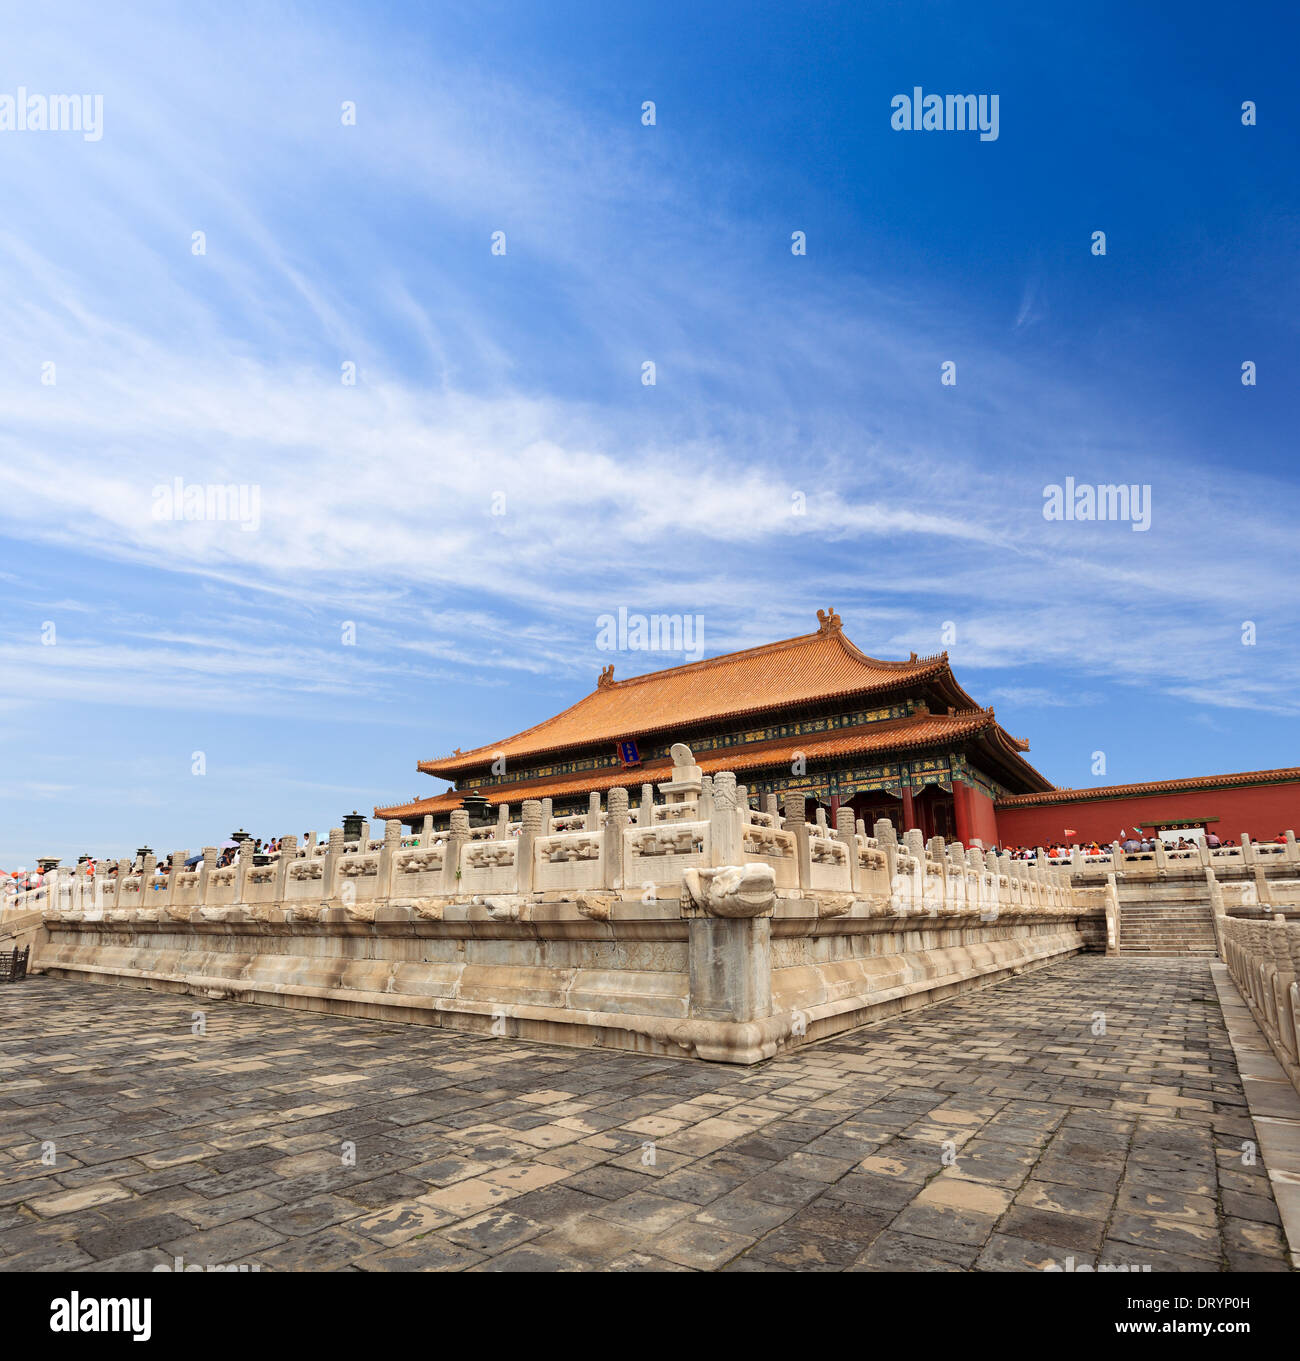 forbidden city of China Stock Photo